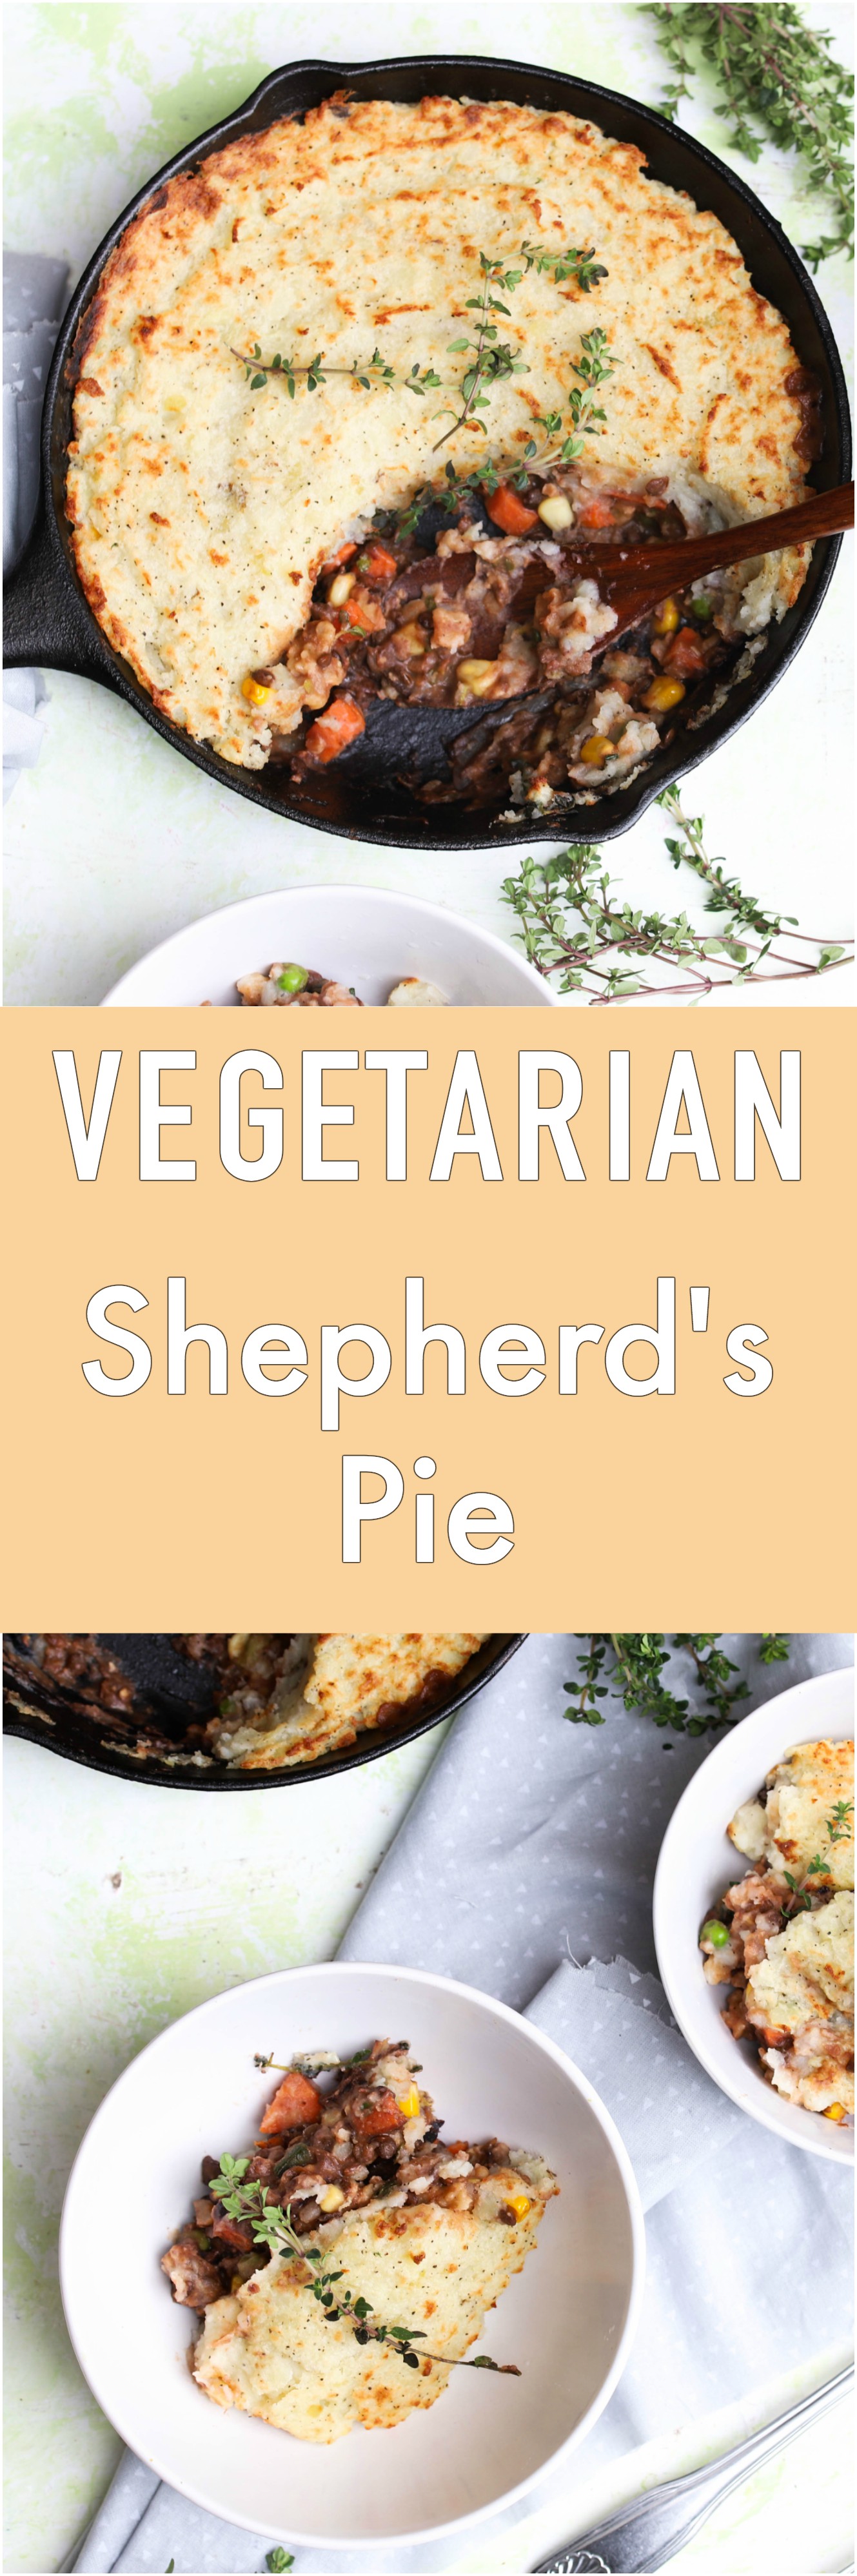 vegetarian shepherds pie.jpg